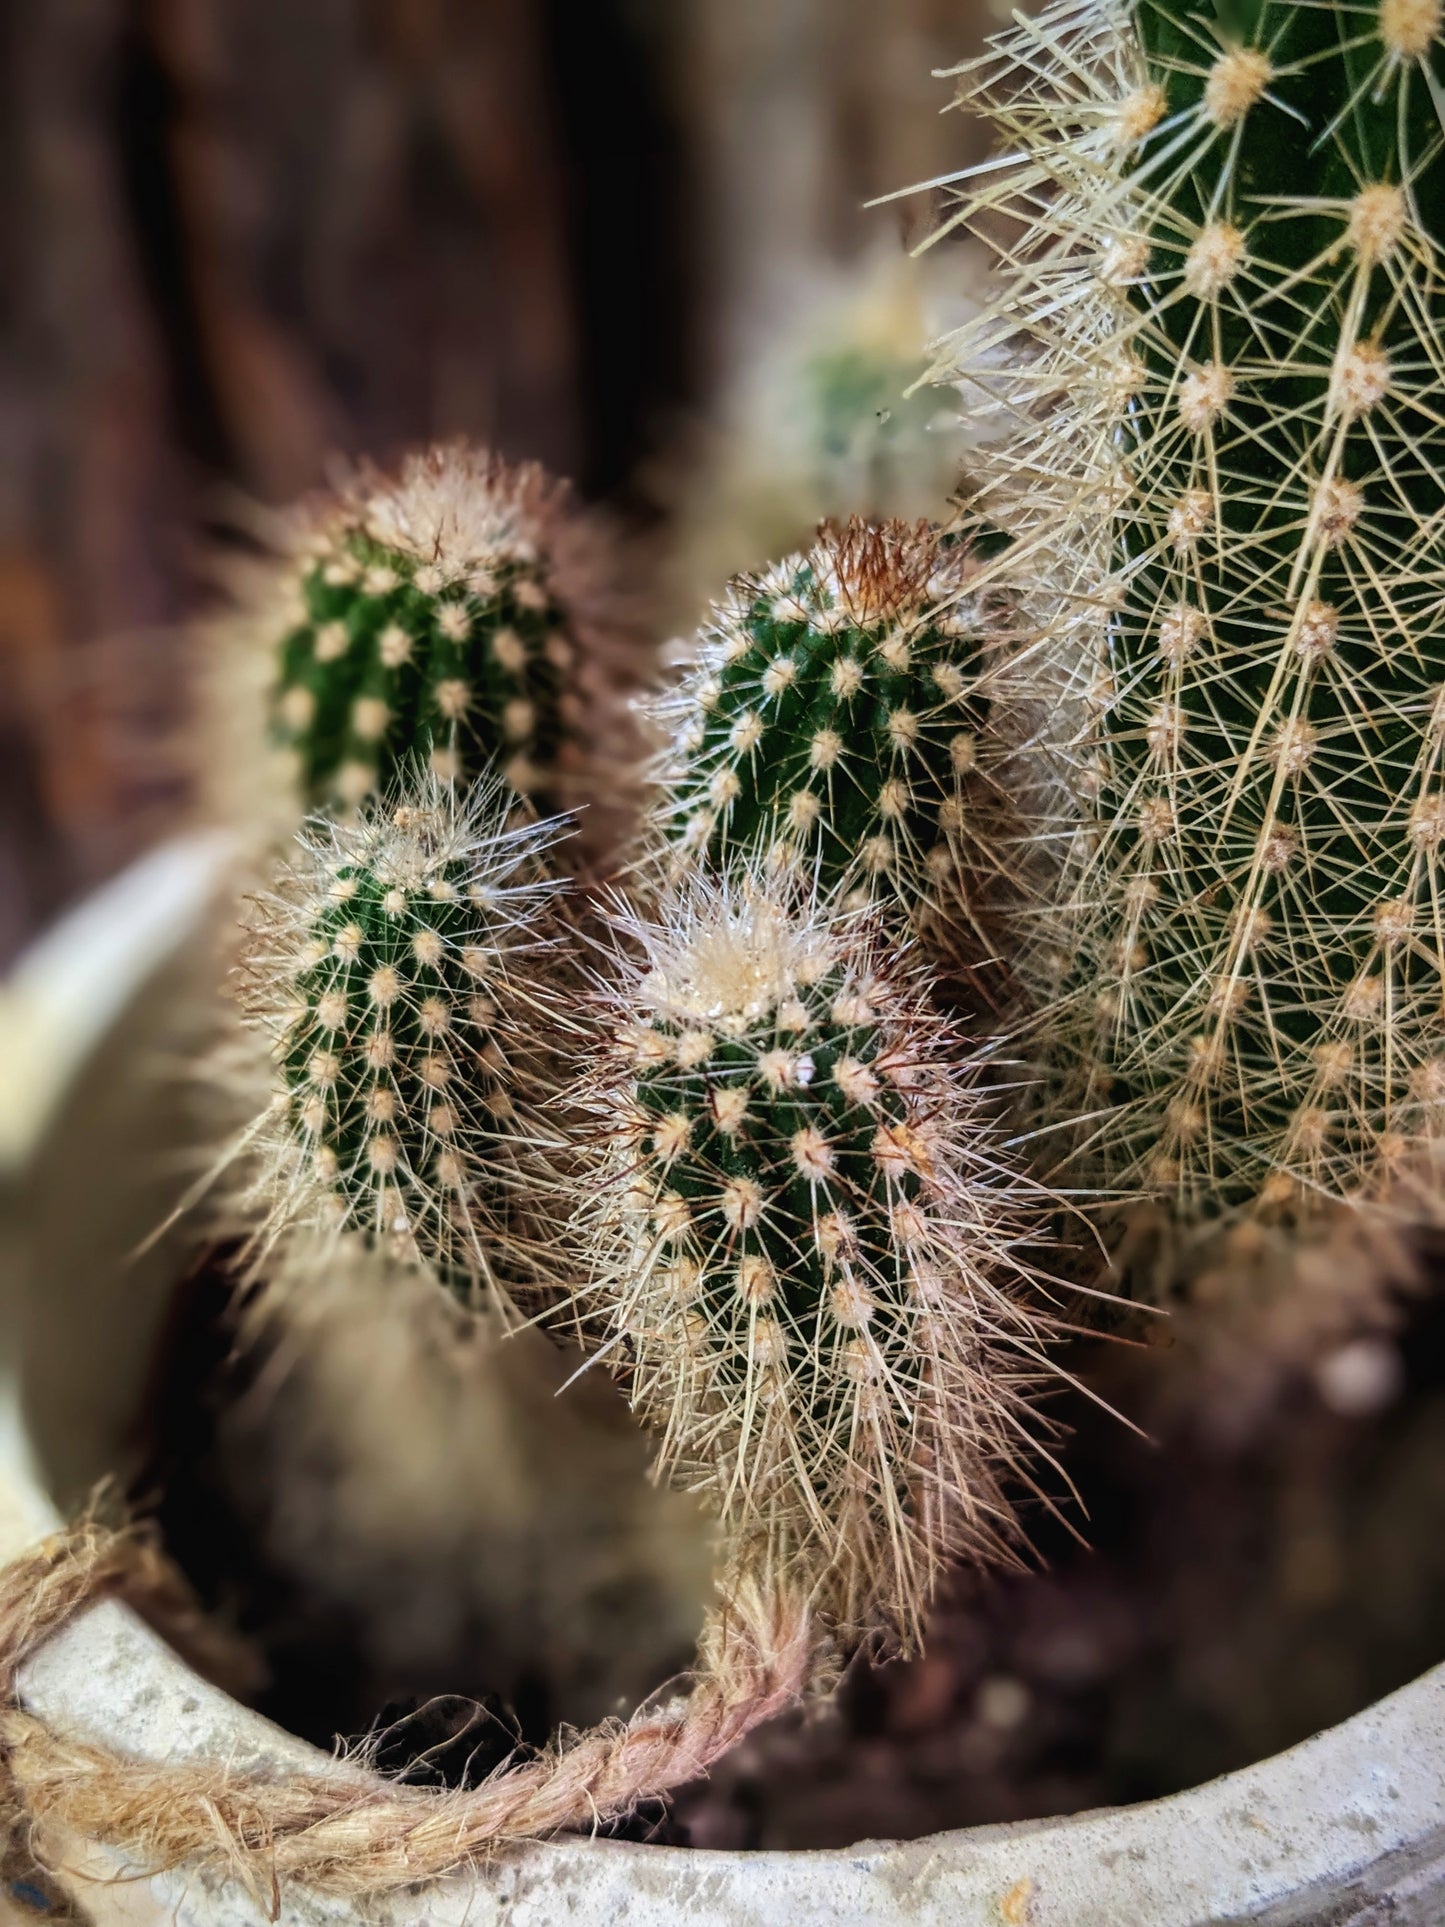 Bristly (Cactus)